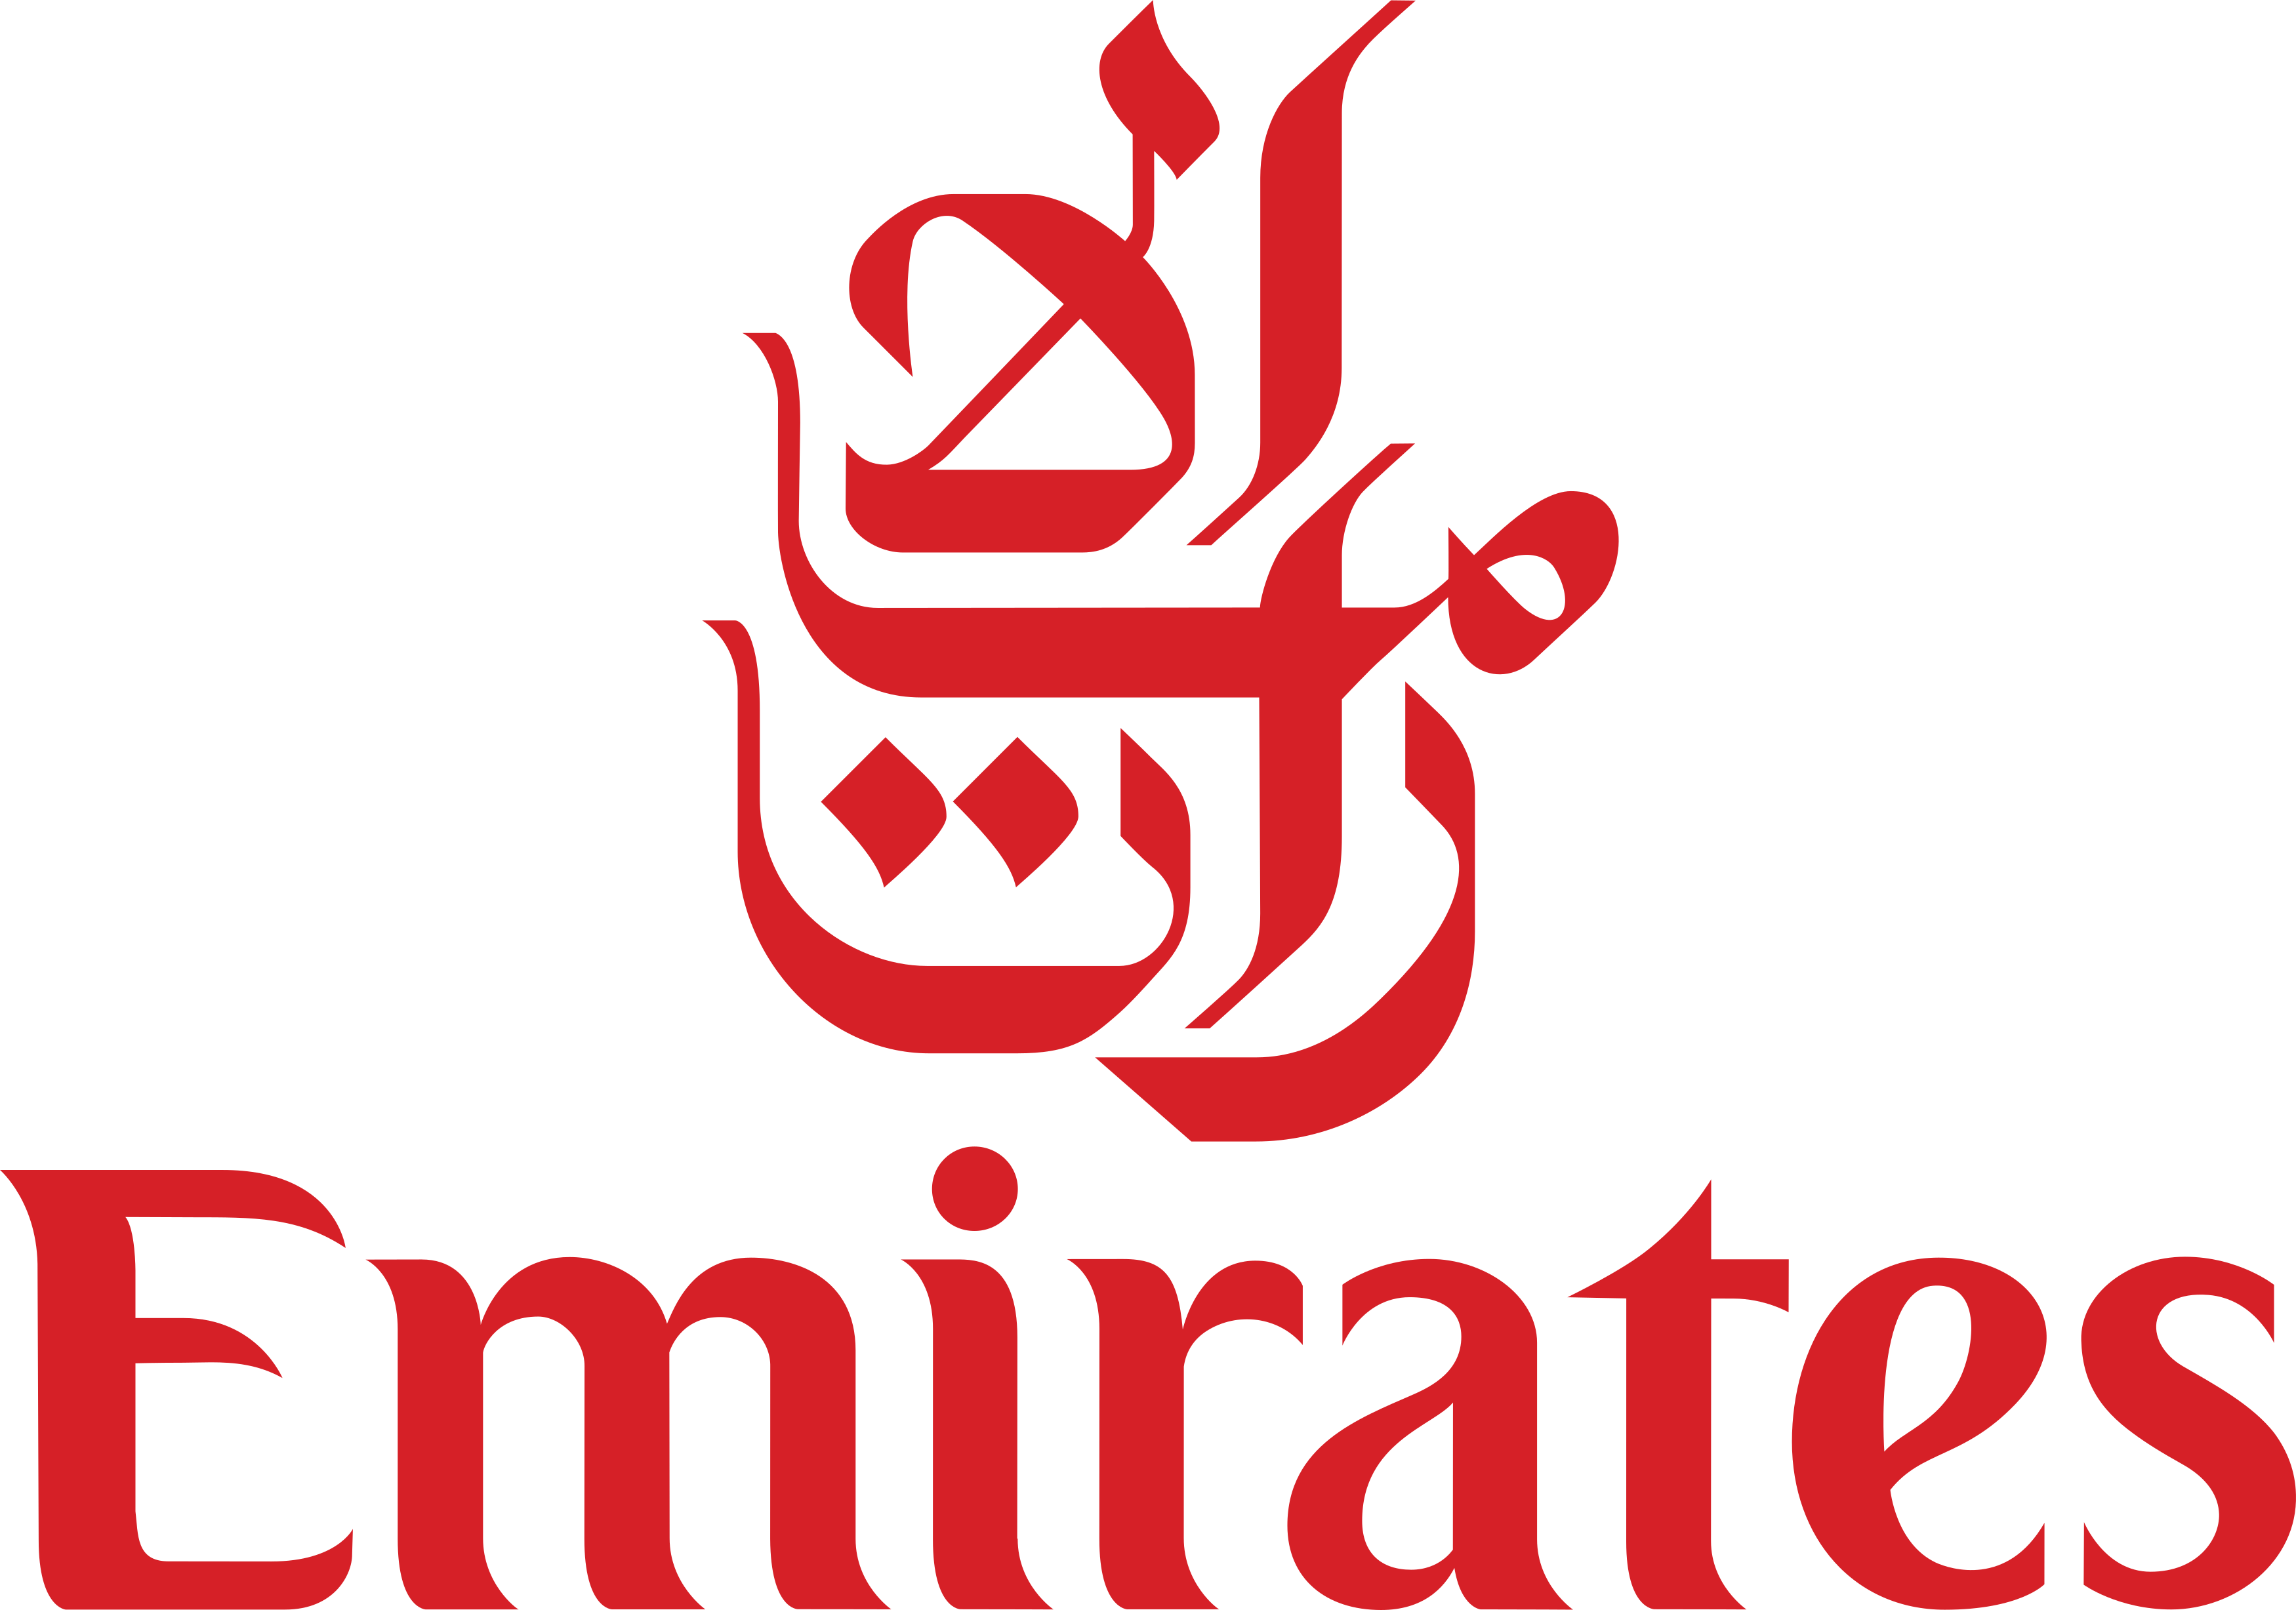 passagem aerea emirates campinas